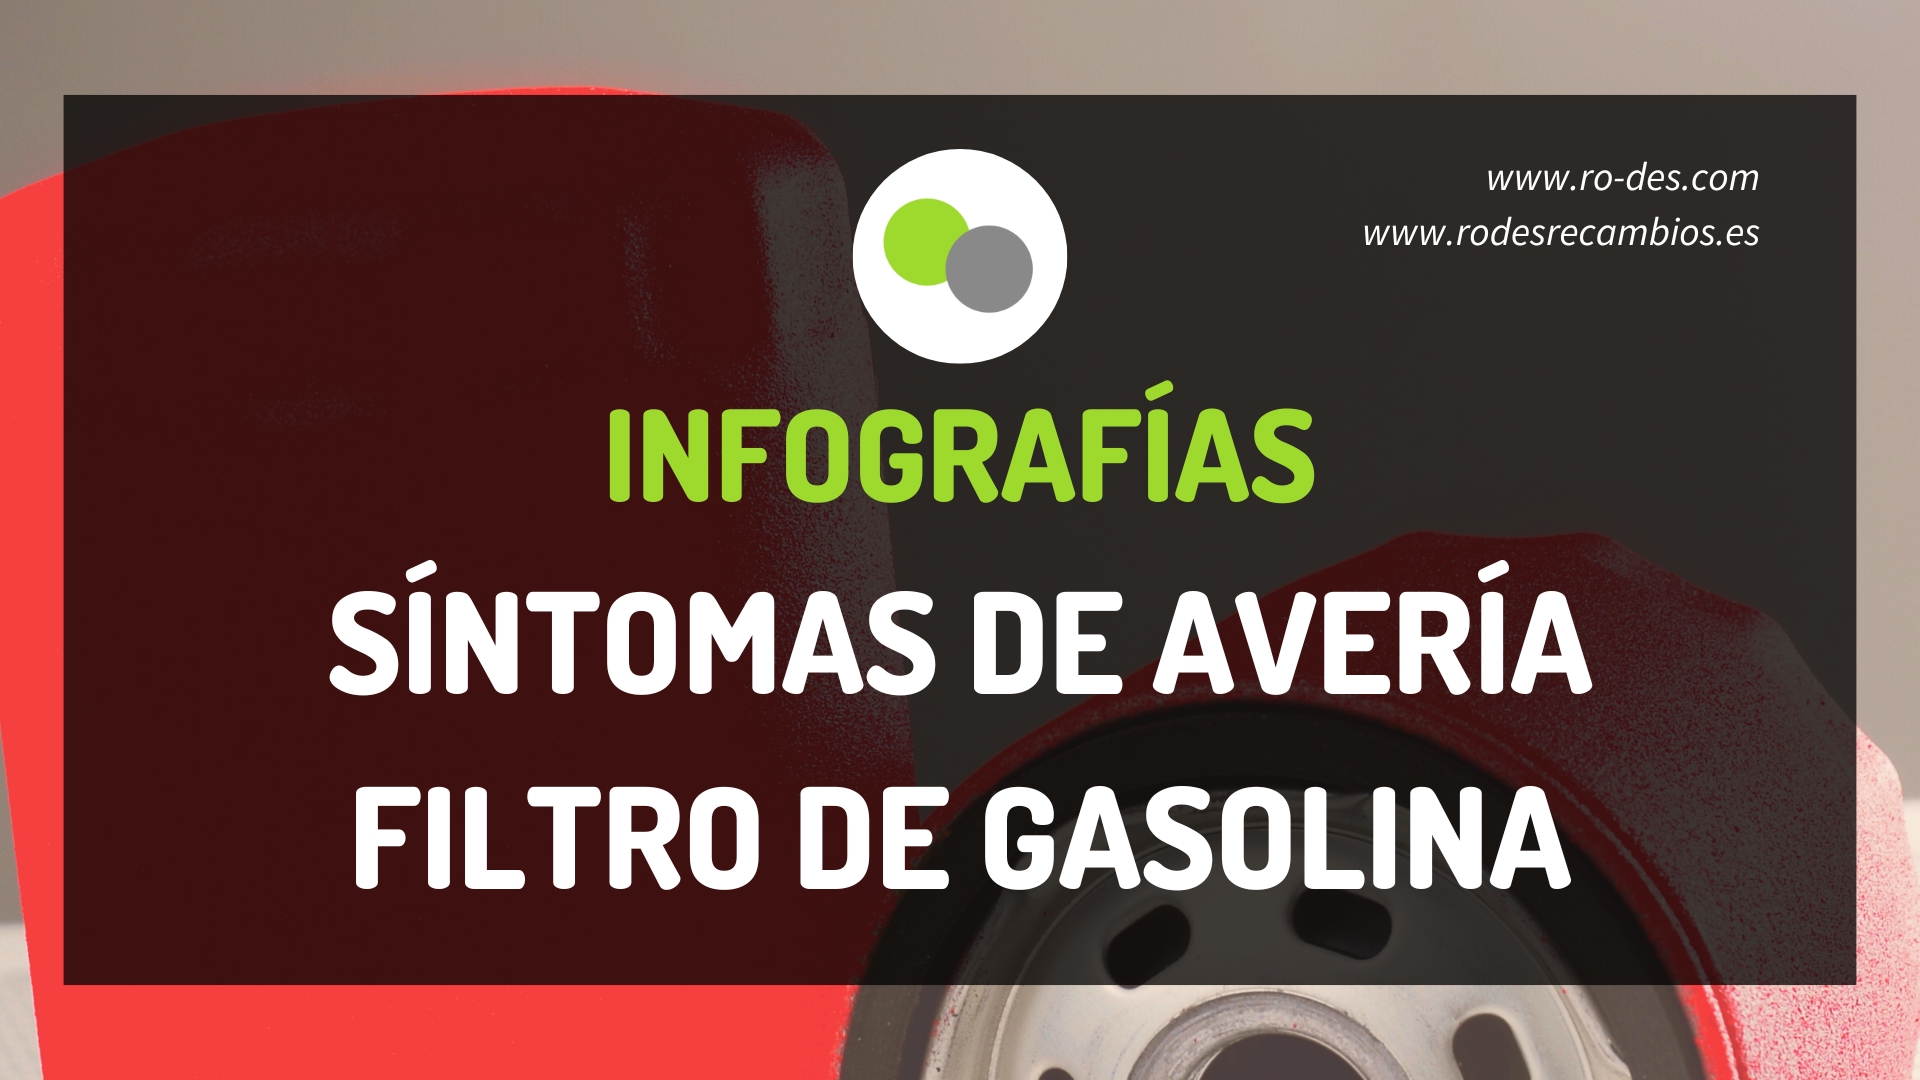 Infografías sobre las averías o fallos en el filtro de gasolina